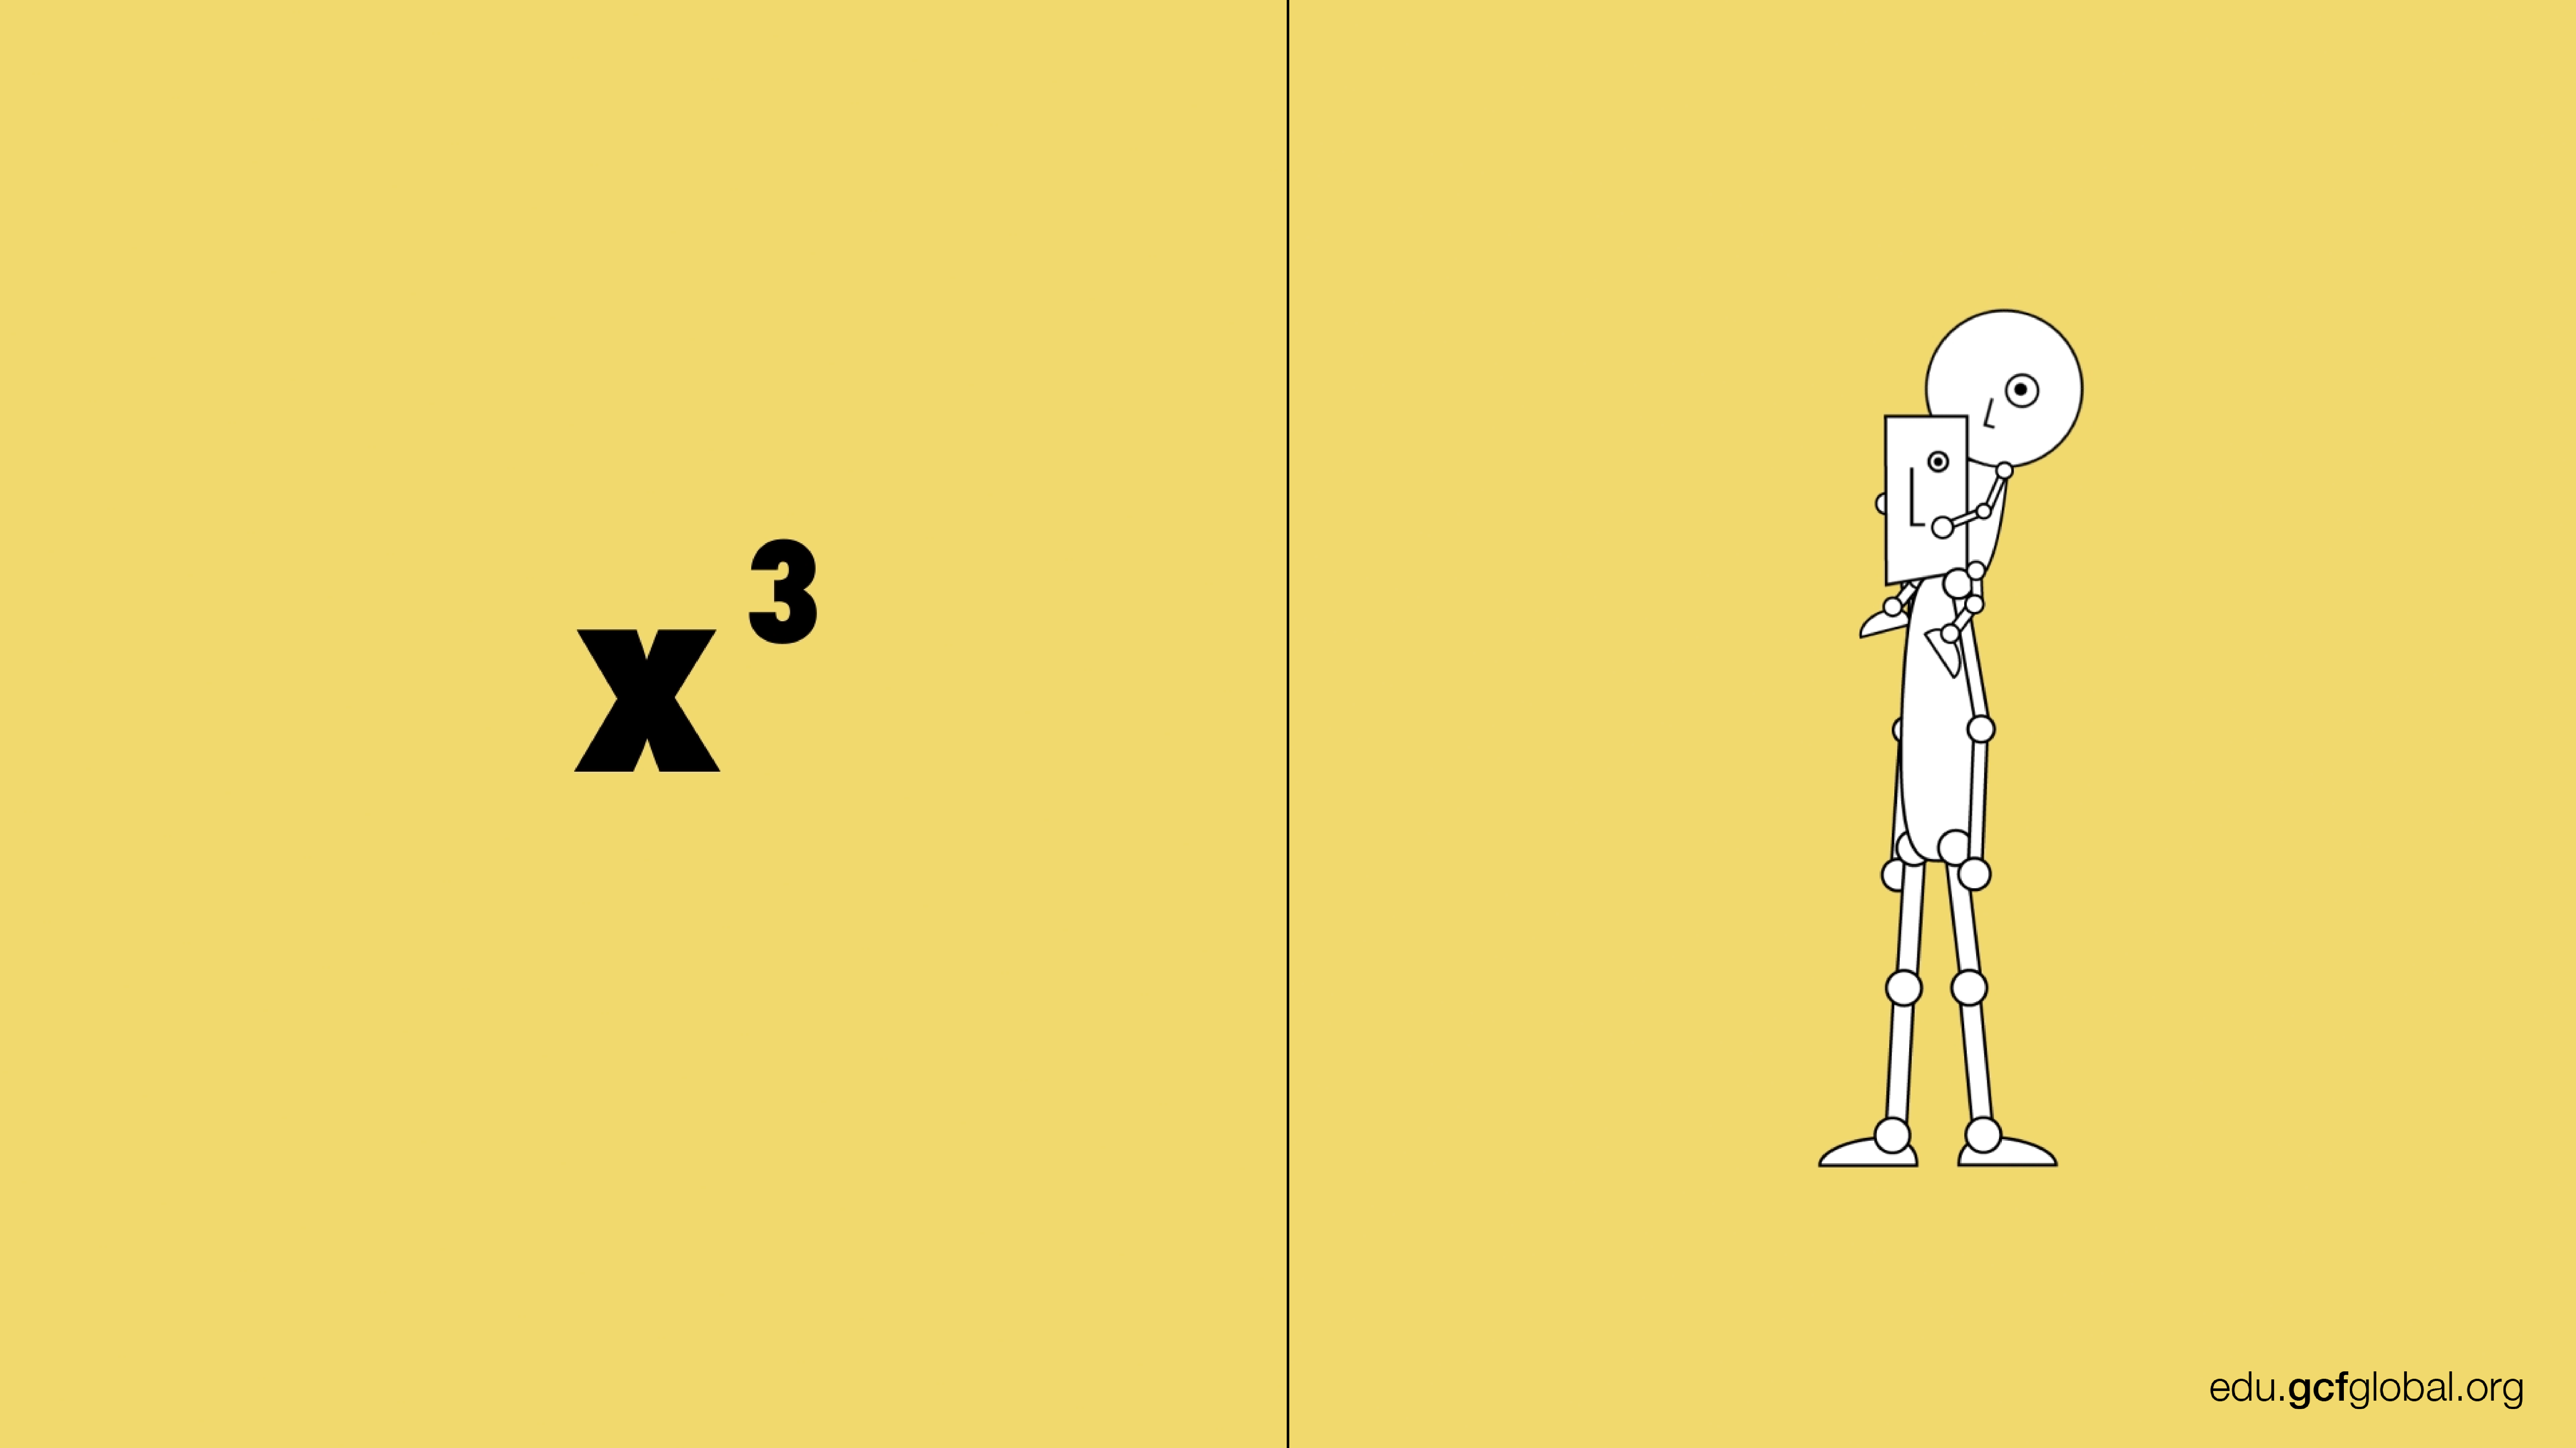 Imagen de exponente (x3) comparada con el hermano mayor cargando a su hermano menor sobre su espalda.